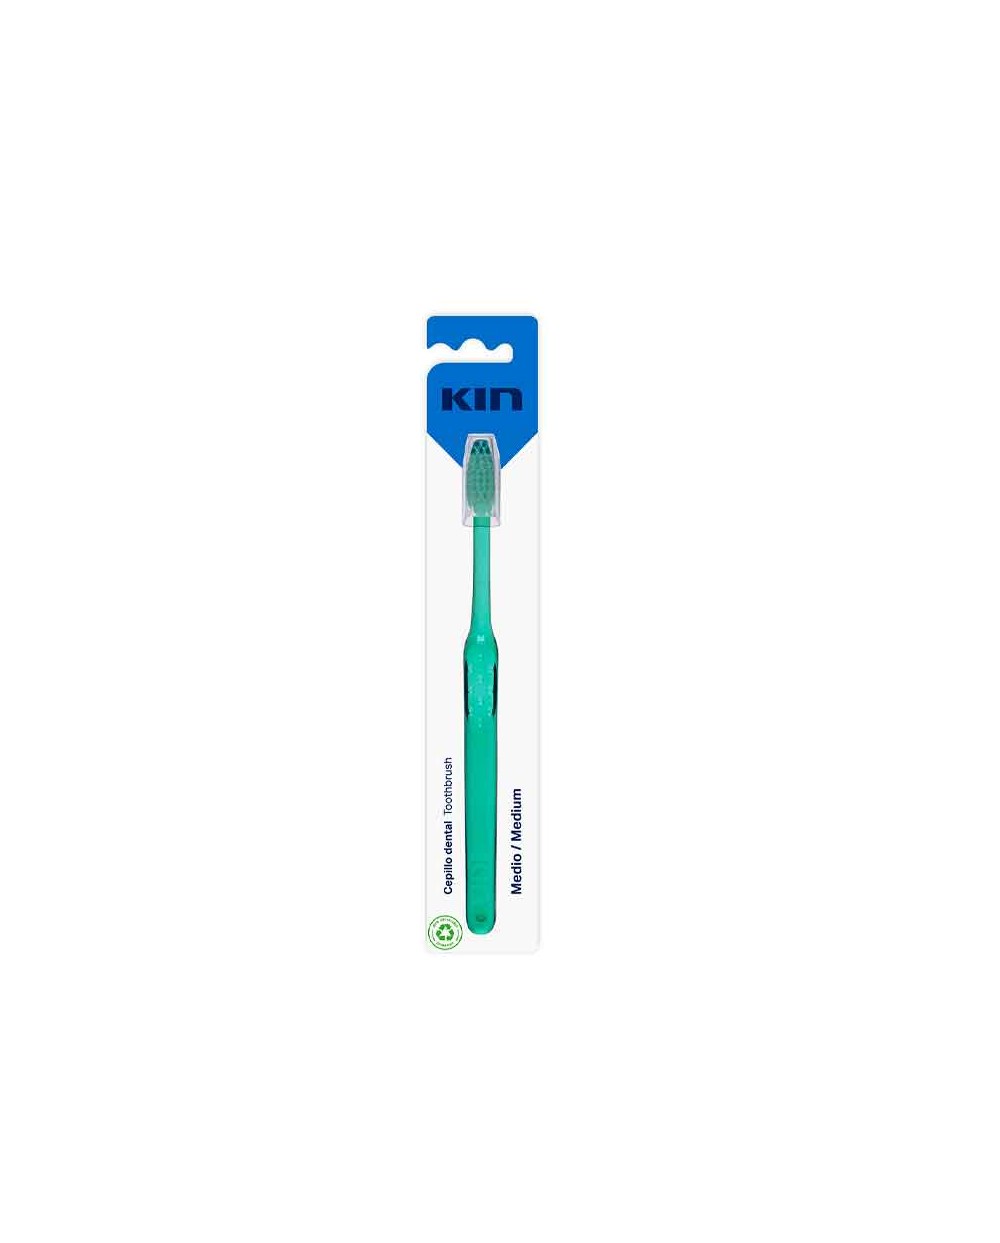 Cepillo dental Kin de dureza media con cabezal triangular para una limpieza más profunda